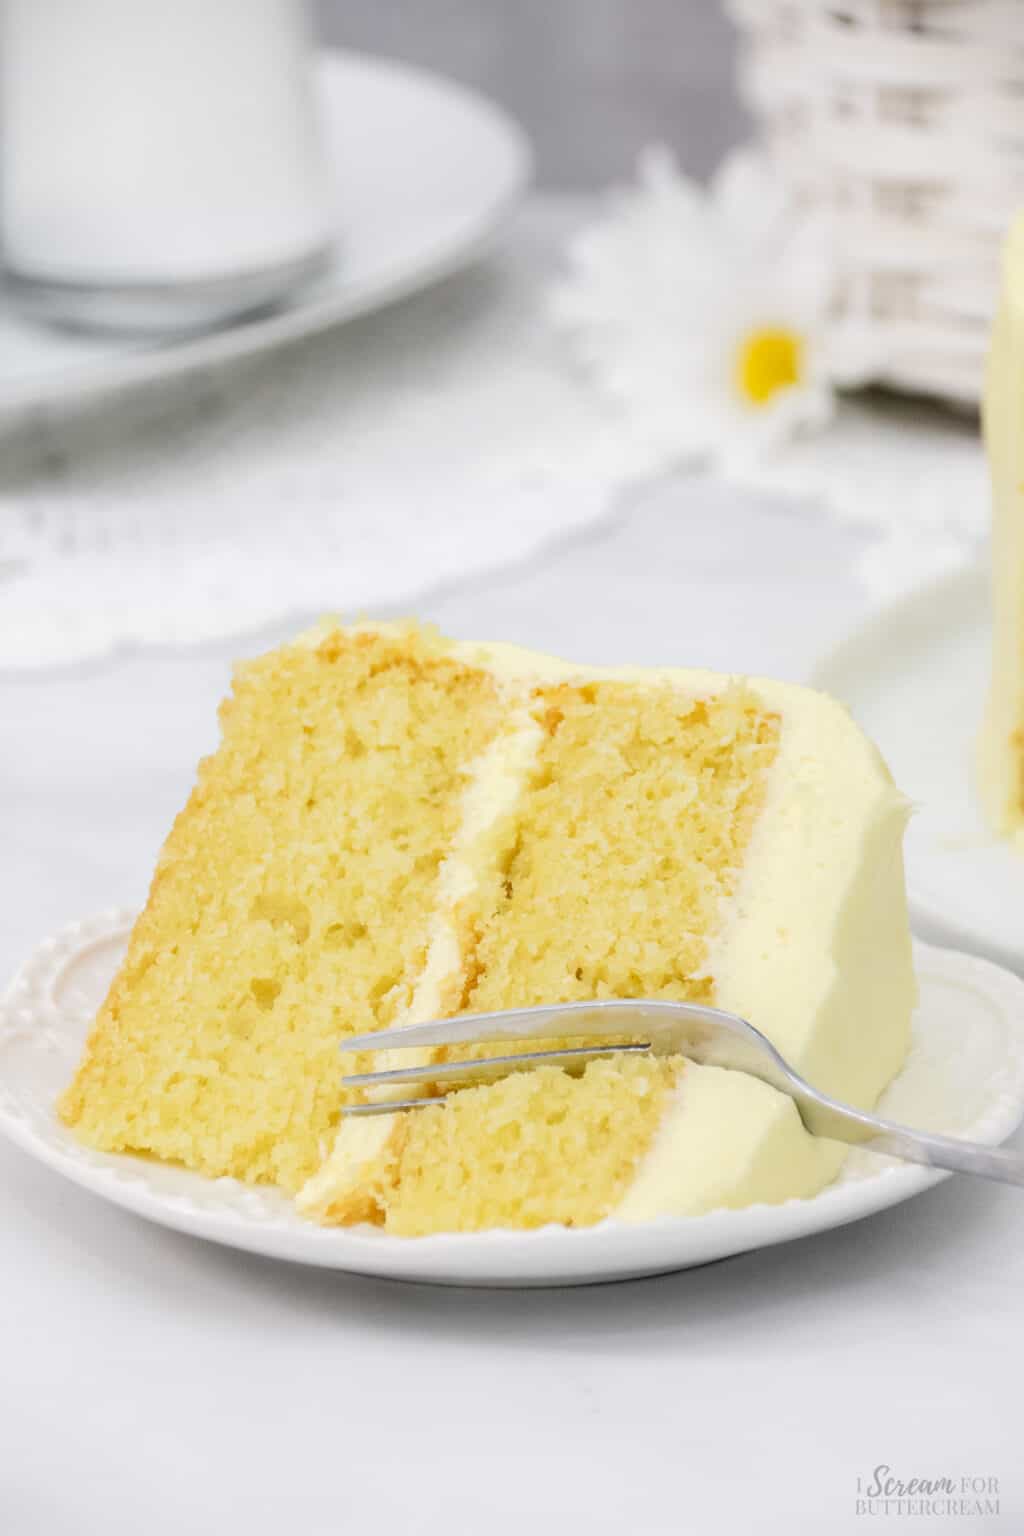 Lemon Velvet Cake with Cream Cheese Frosting - I Scream for Buttercream